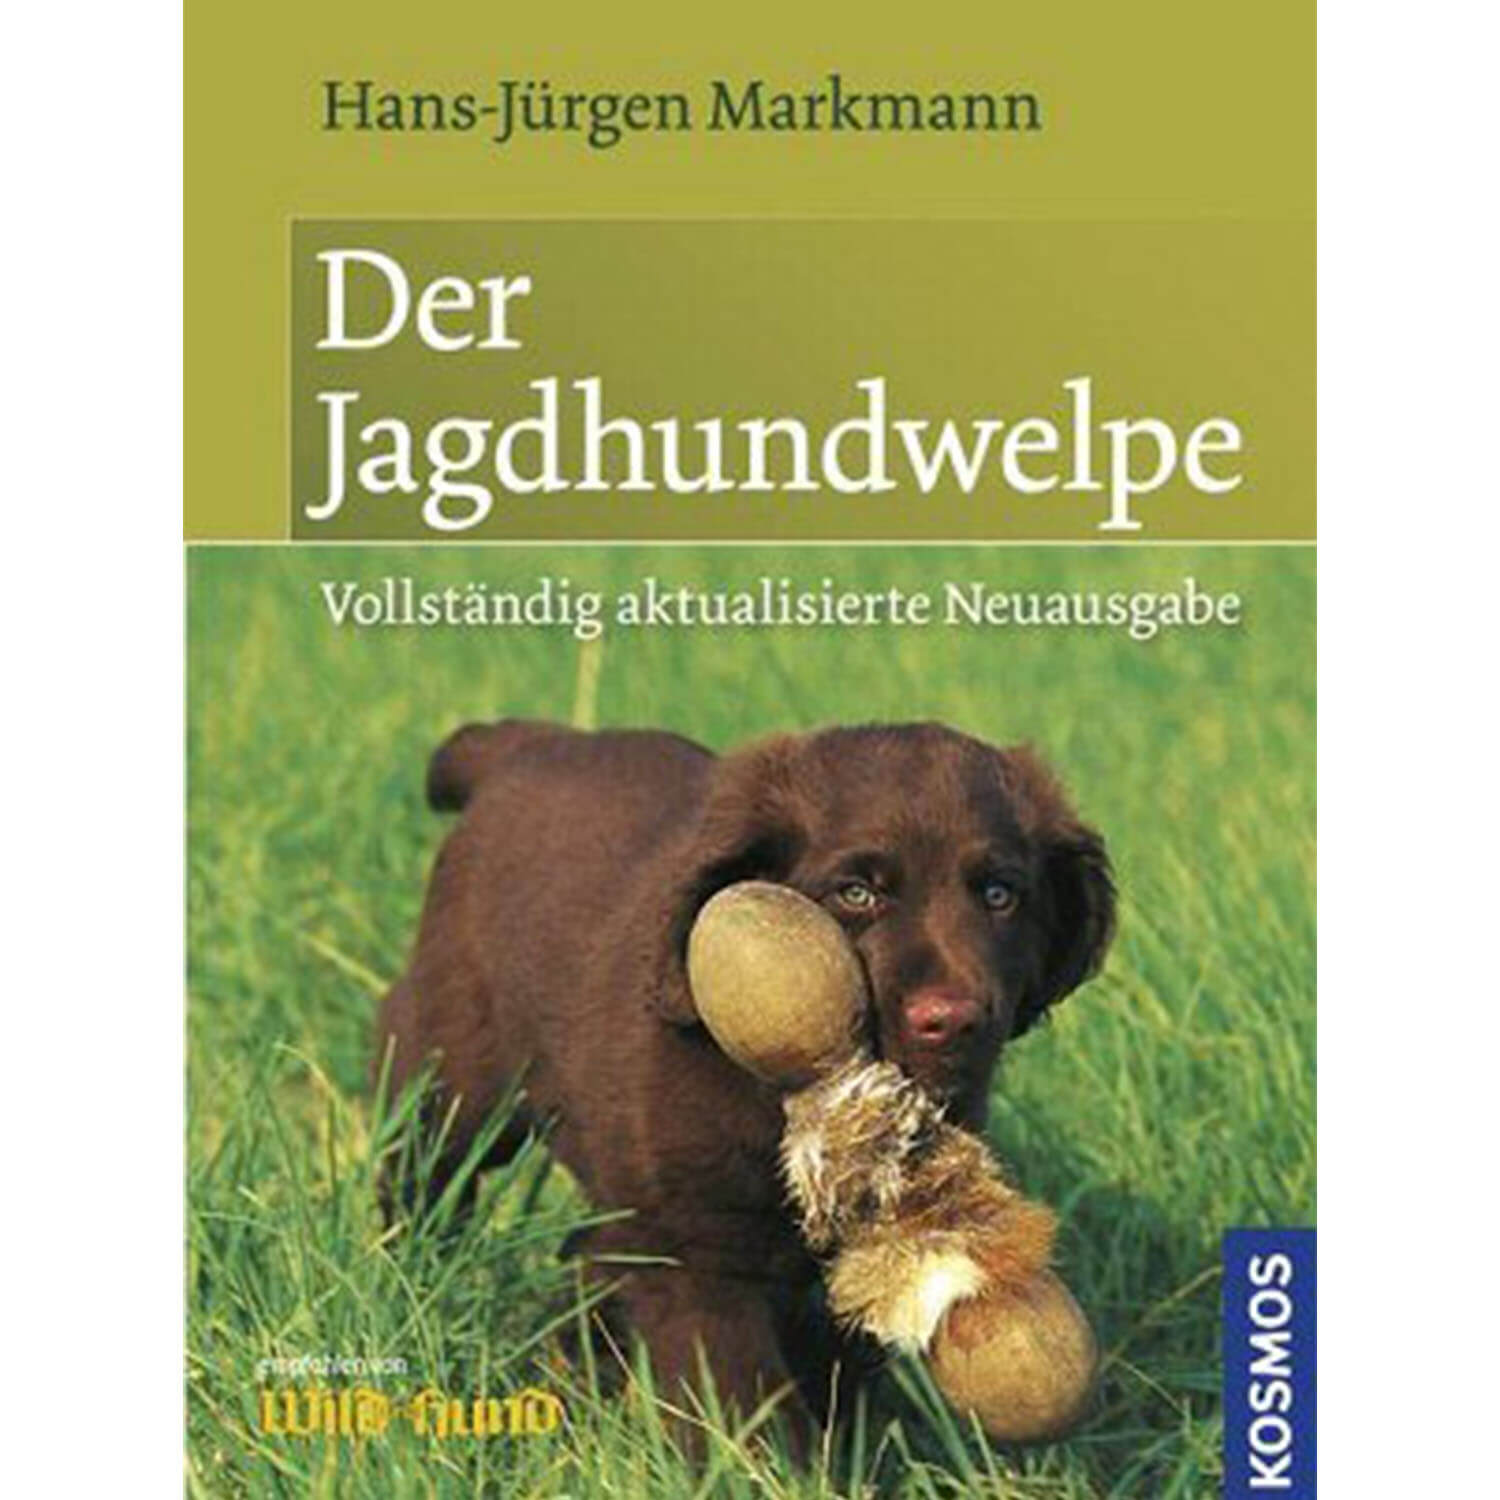 Der Jagdhundewelpe - Buch - Markmann - Jagdausrüstung